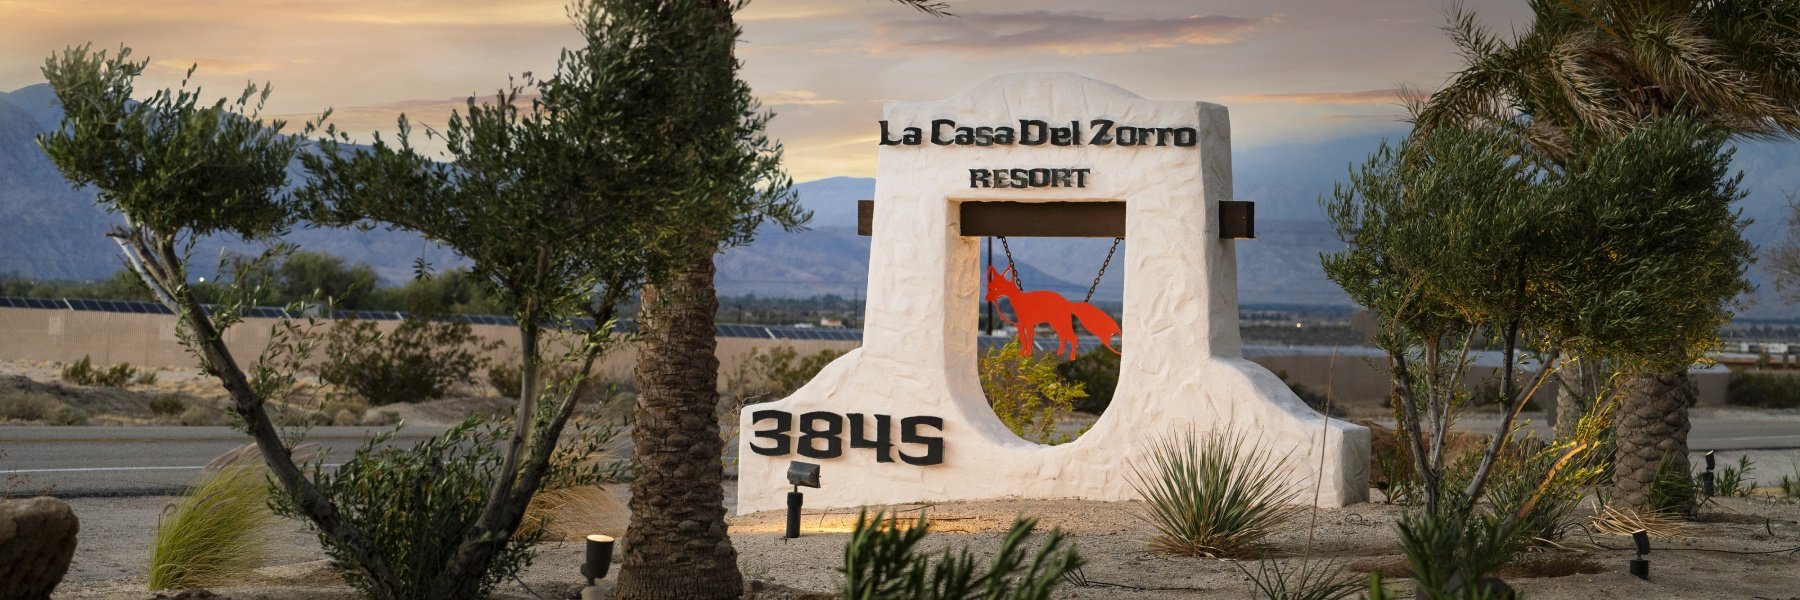 Offers at la casa del zorro resort and spa borrego springs california